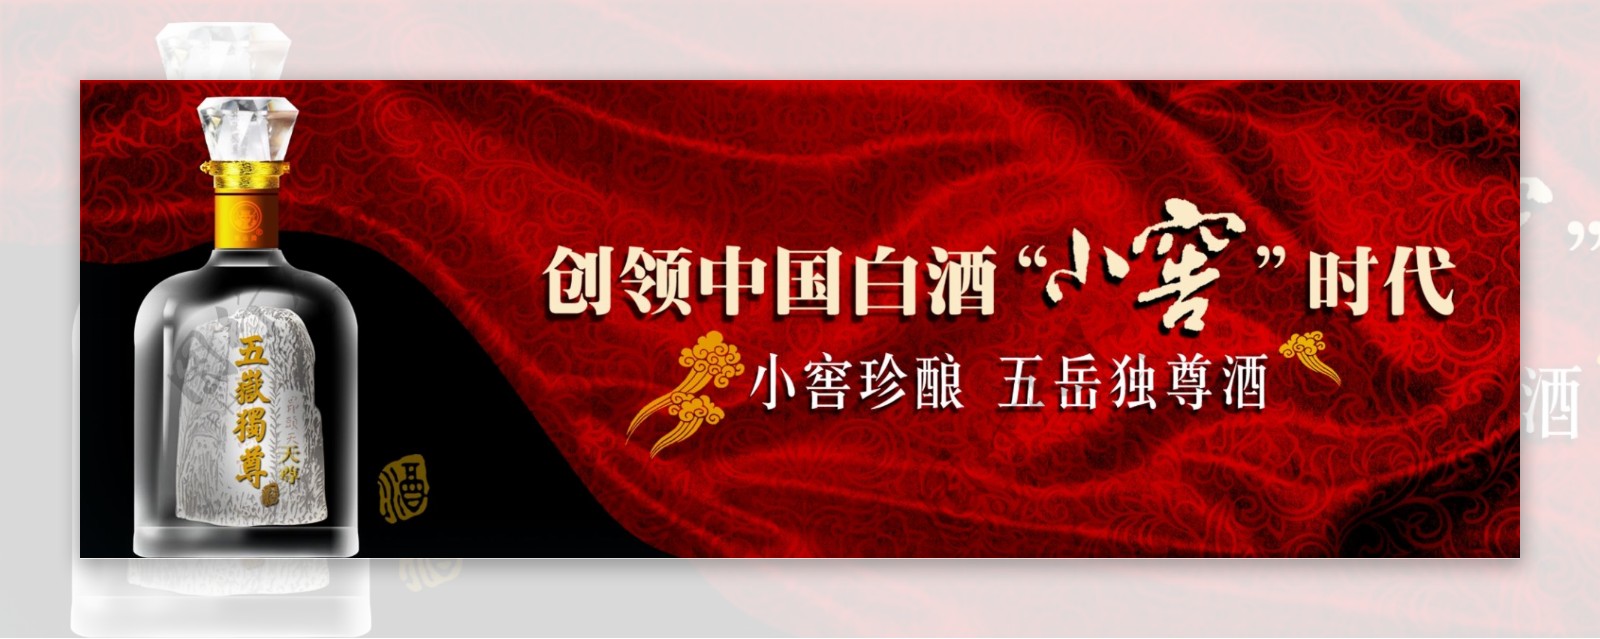 中国白酒广告横幅设计